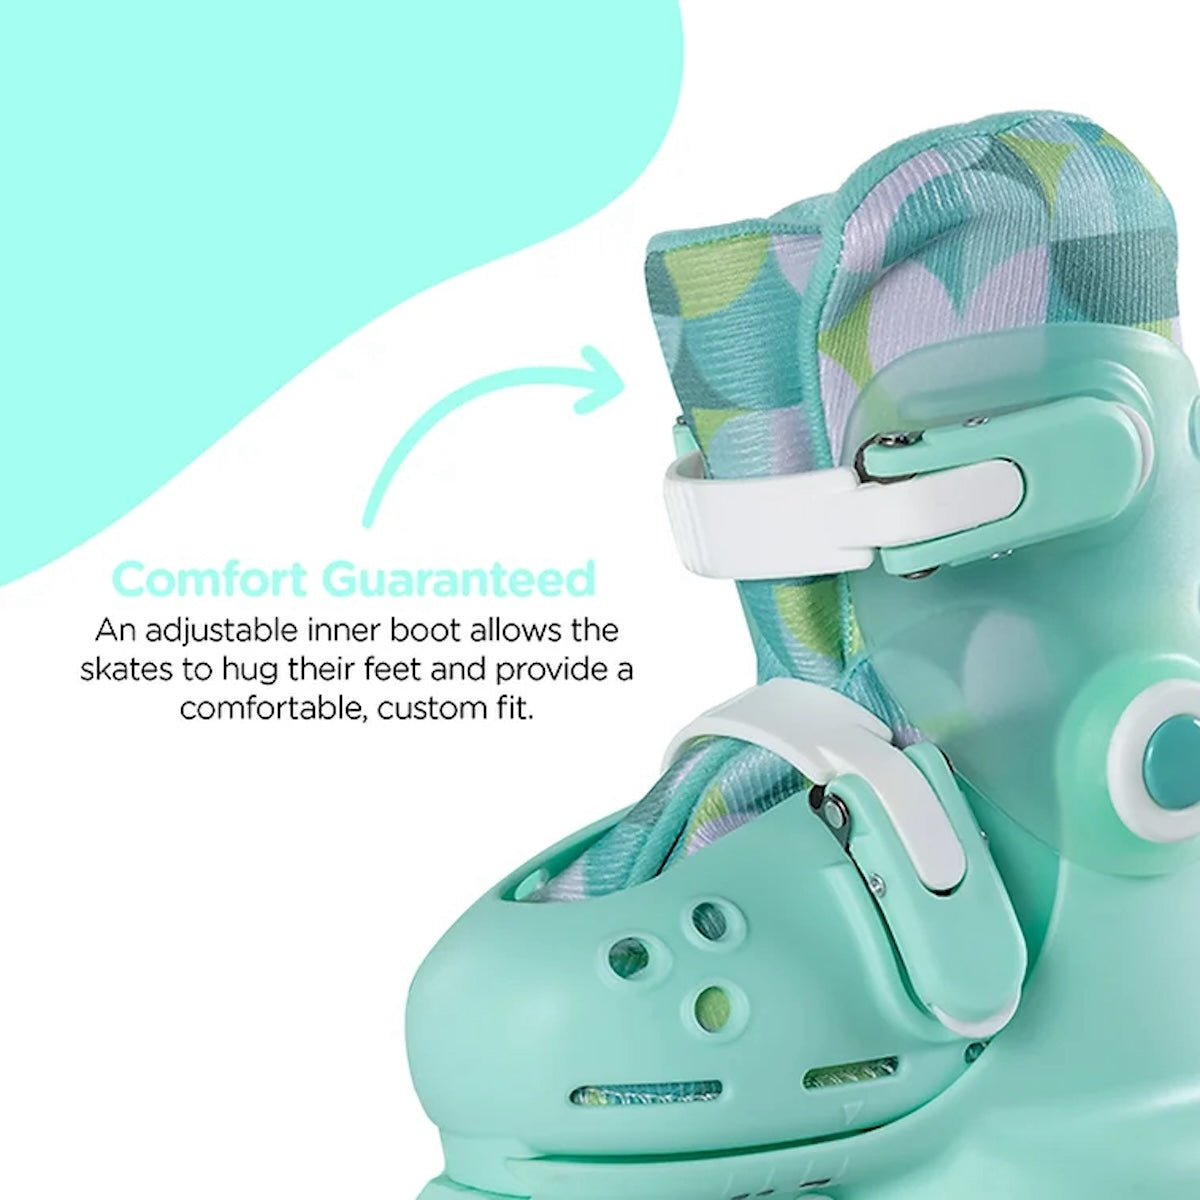 De perfecte kinderskeelers: de Twista skates groen van het merk Yvolution. Verstelbaar met een druk op de knop. Ook aan te passen naar 2 wielen naast elkaar voor meer balans. VanZus